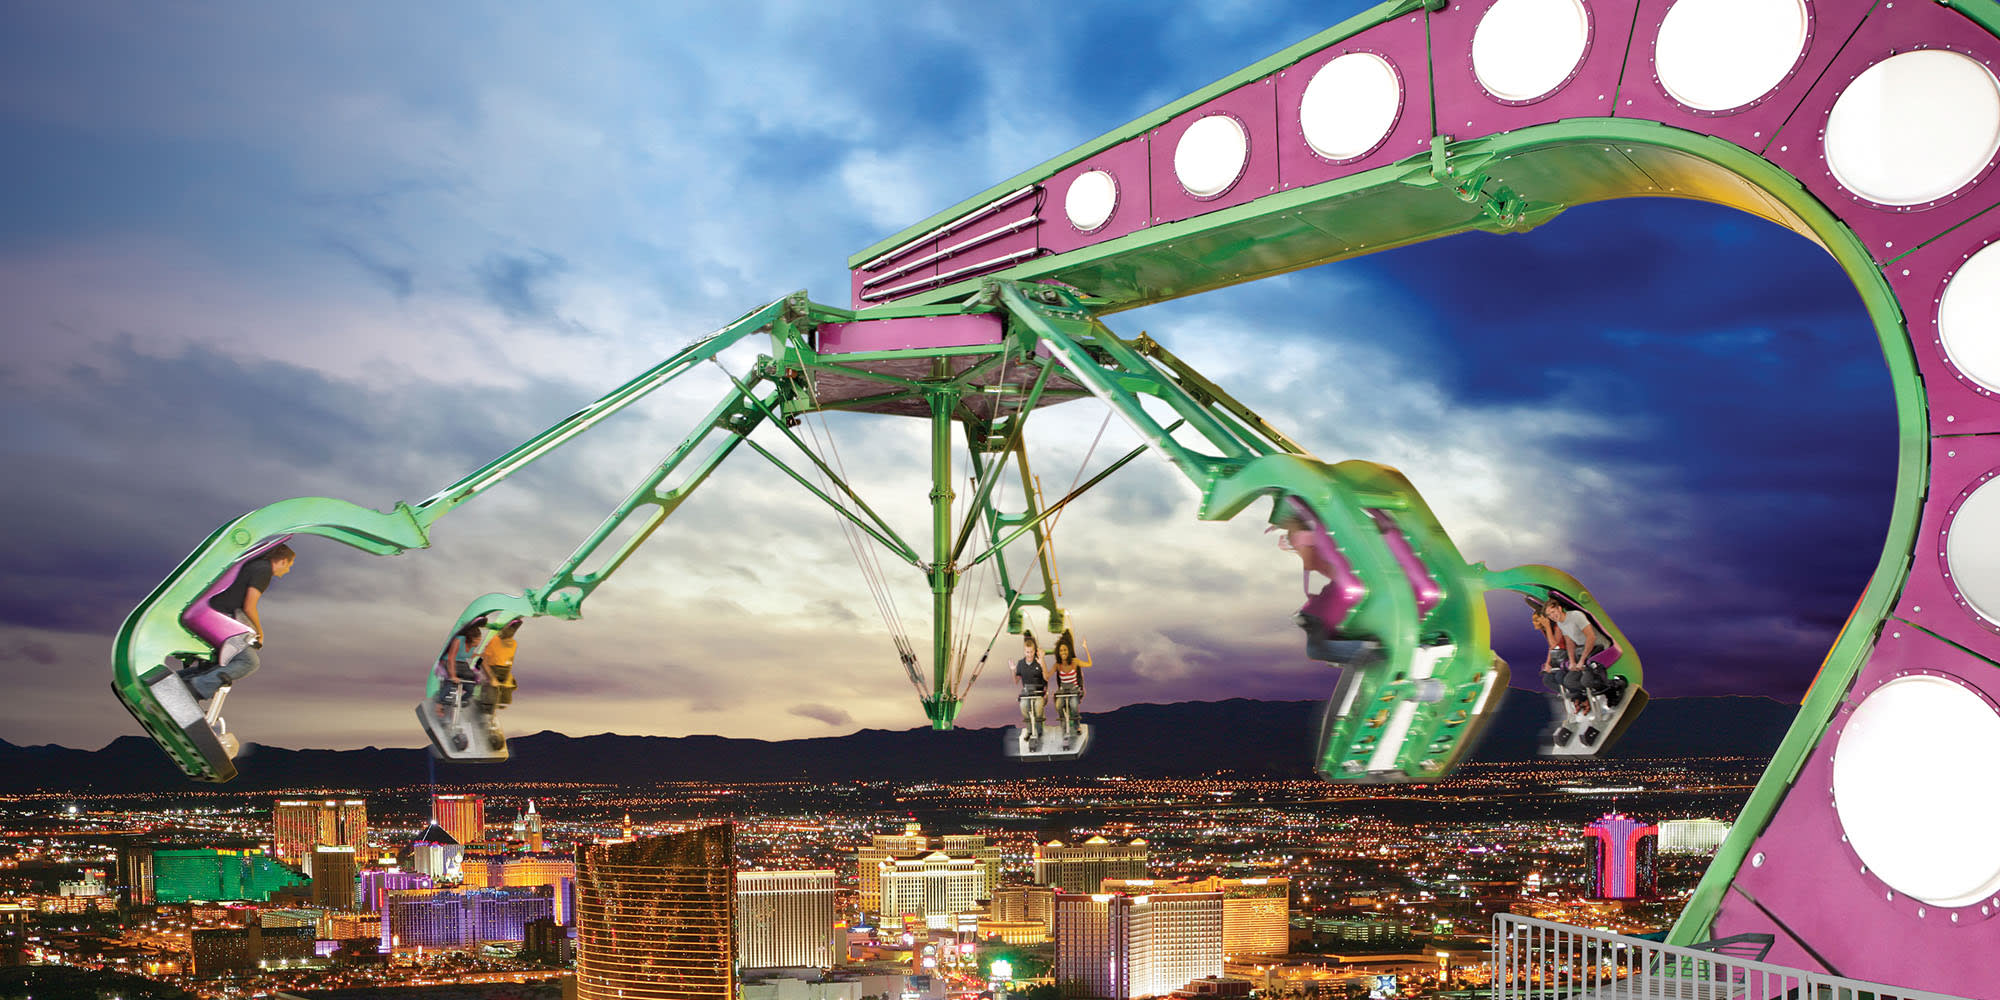 Atracciones en The Strat, Las Vegas. Planes en el centro de Las Vegas.